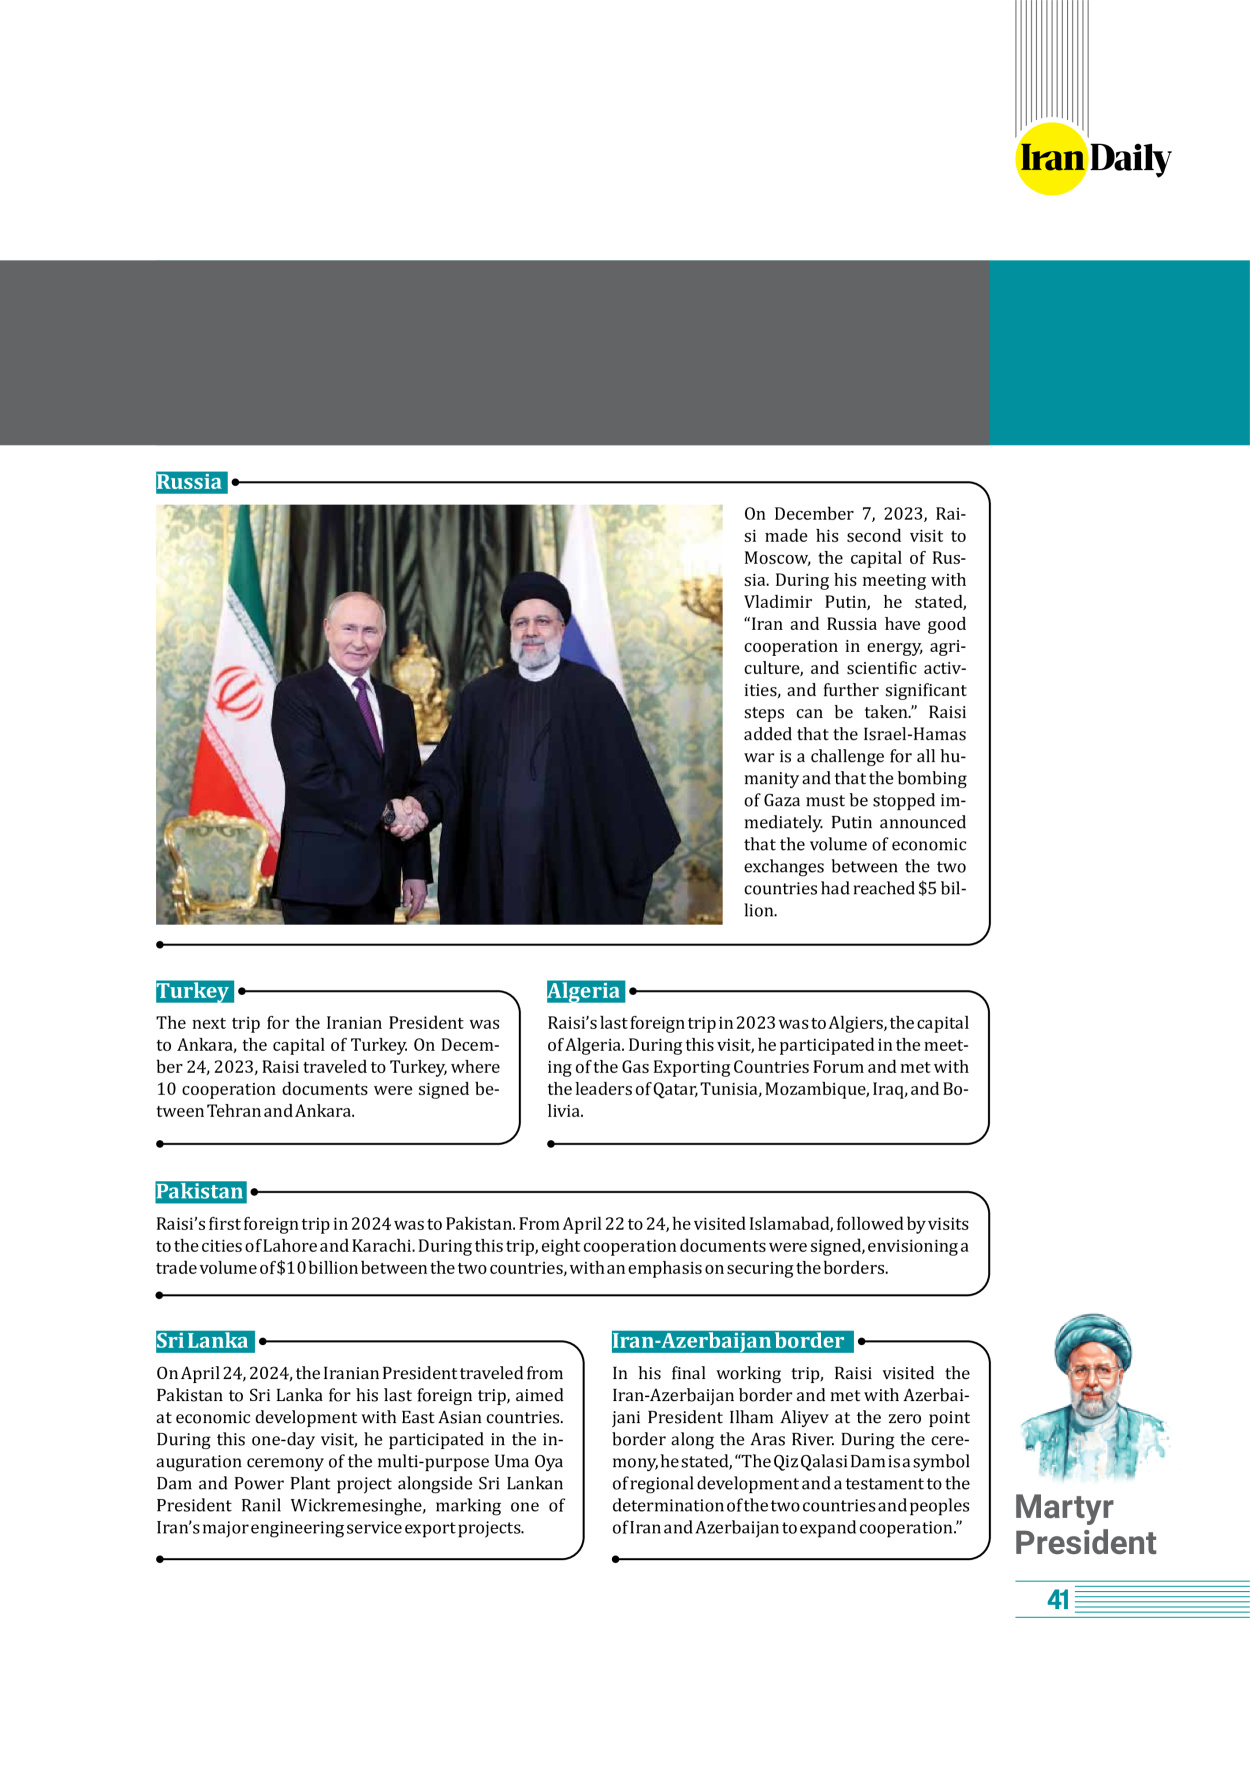 روزنامه ایران - ویژه نامه وِزه نامه چهلم شهید رییسی( انگلیسی) - ۱۷ تیر ۱۴۰۳ - صفحه ۴۱